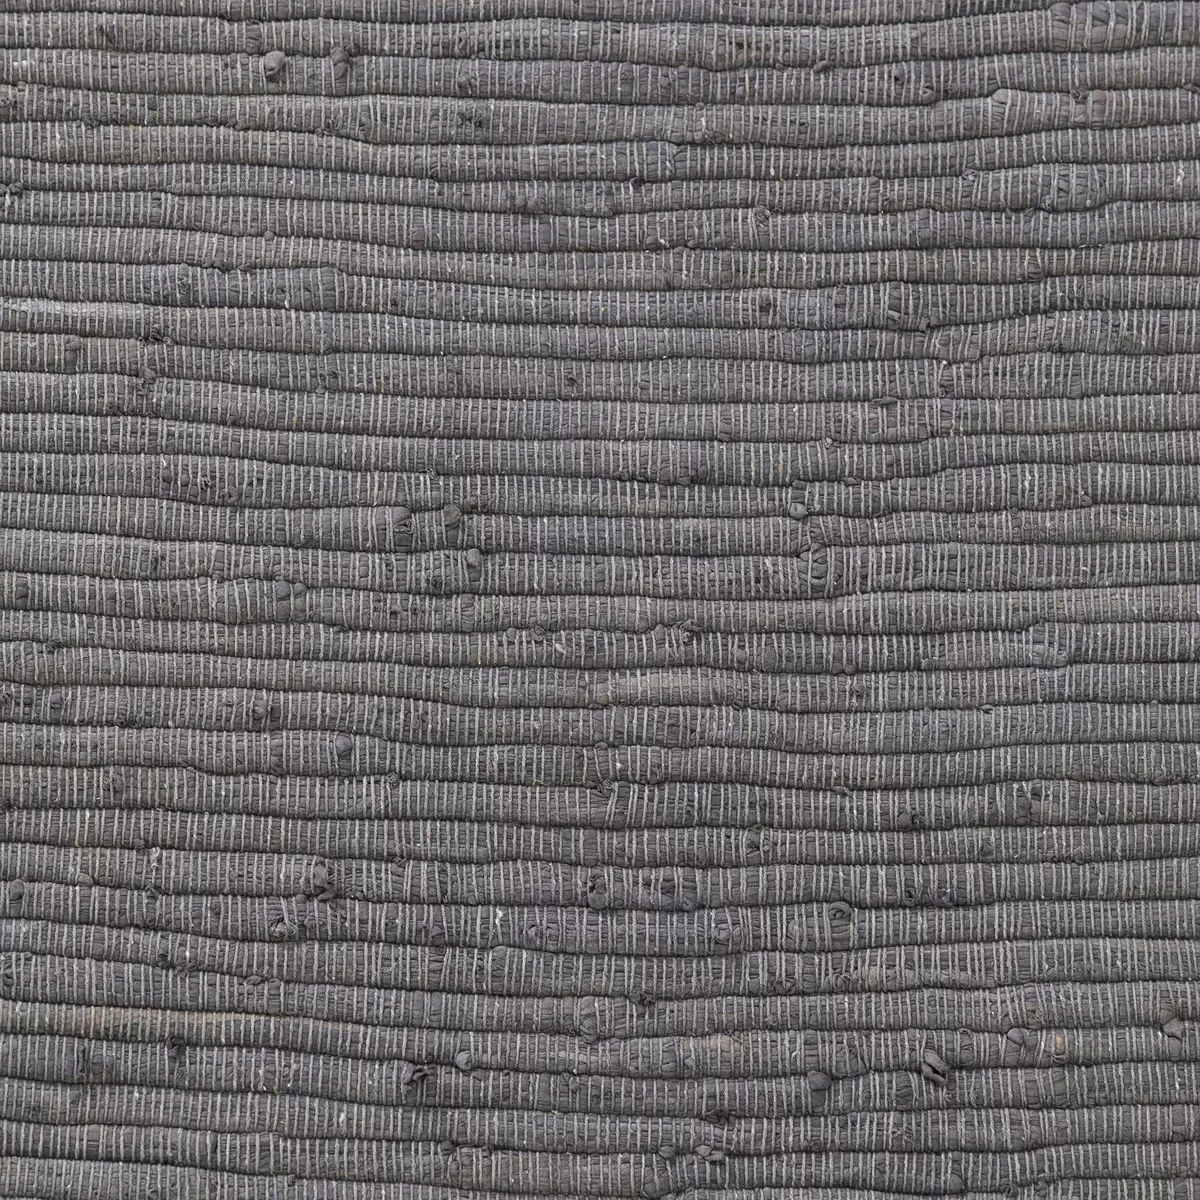 Länglicher Teppich Chindi aus Baumwolle in Grau günstig online kaufen